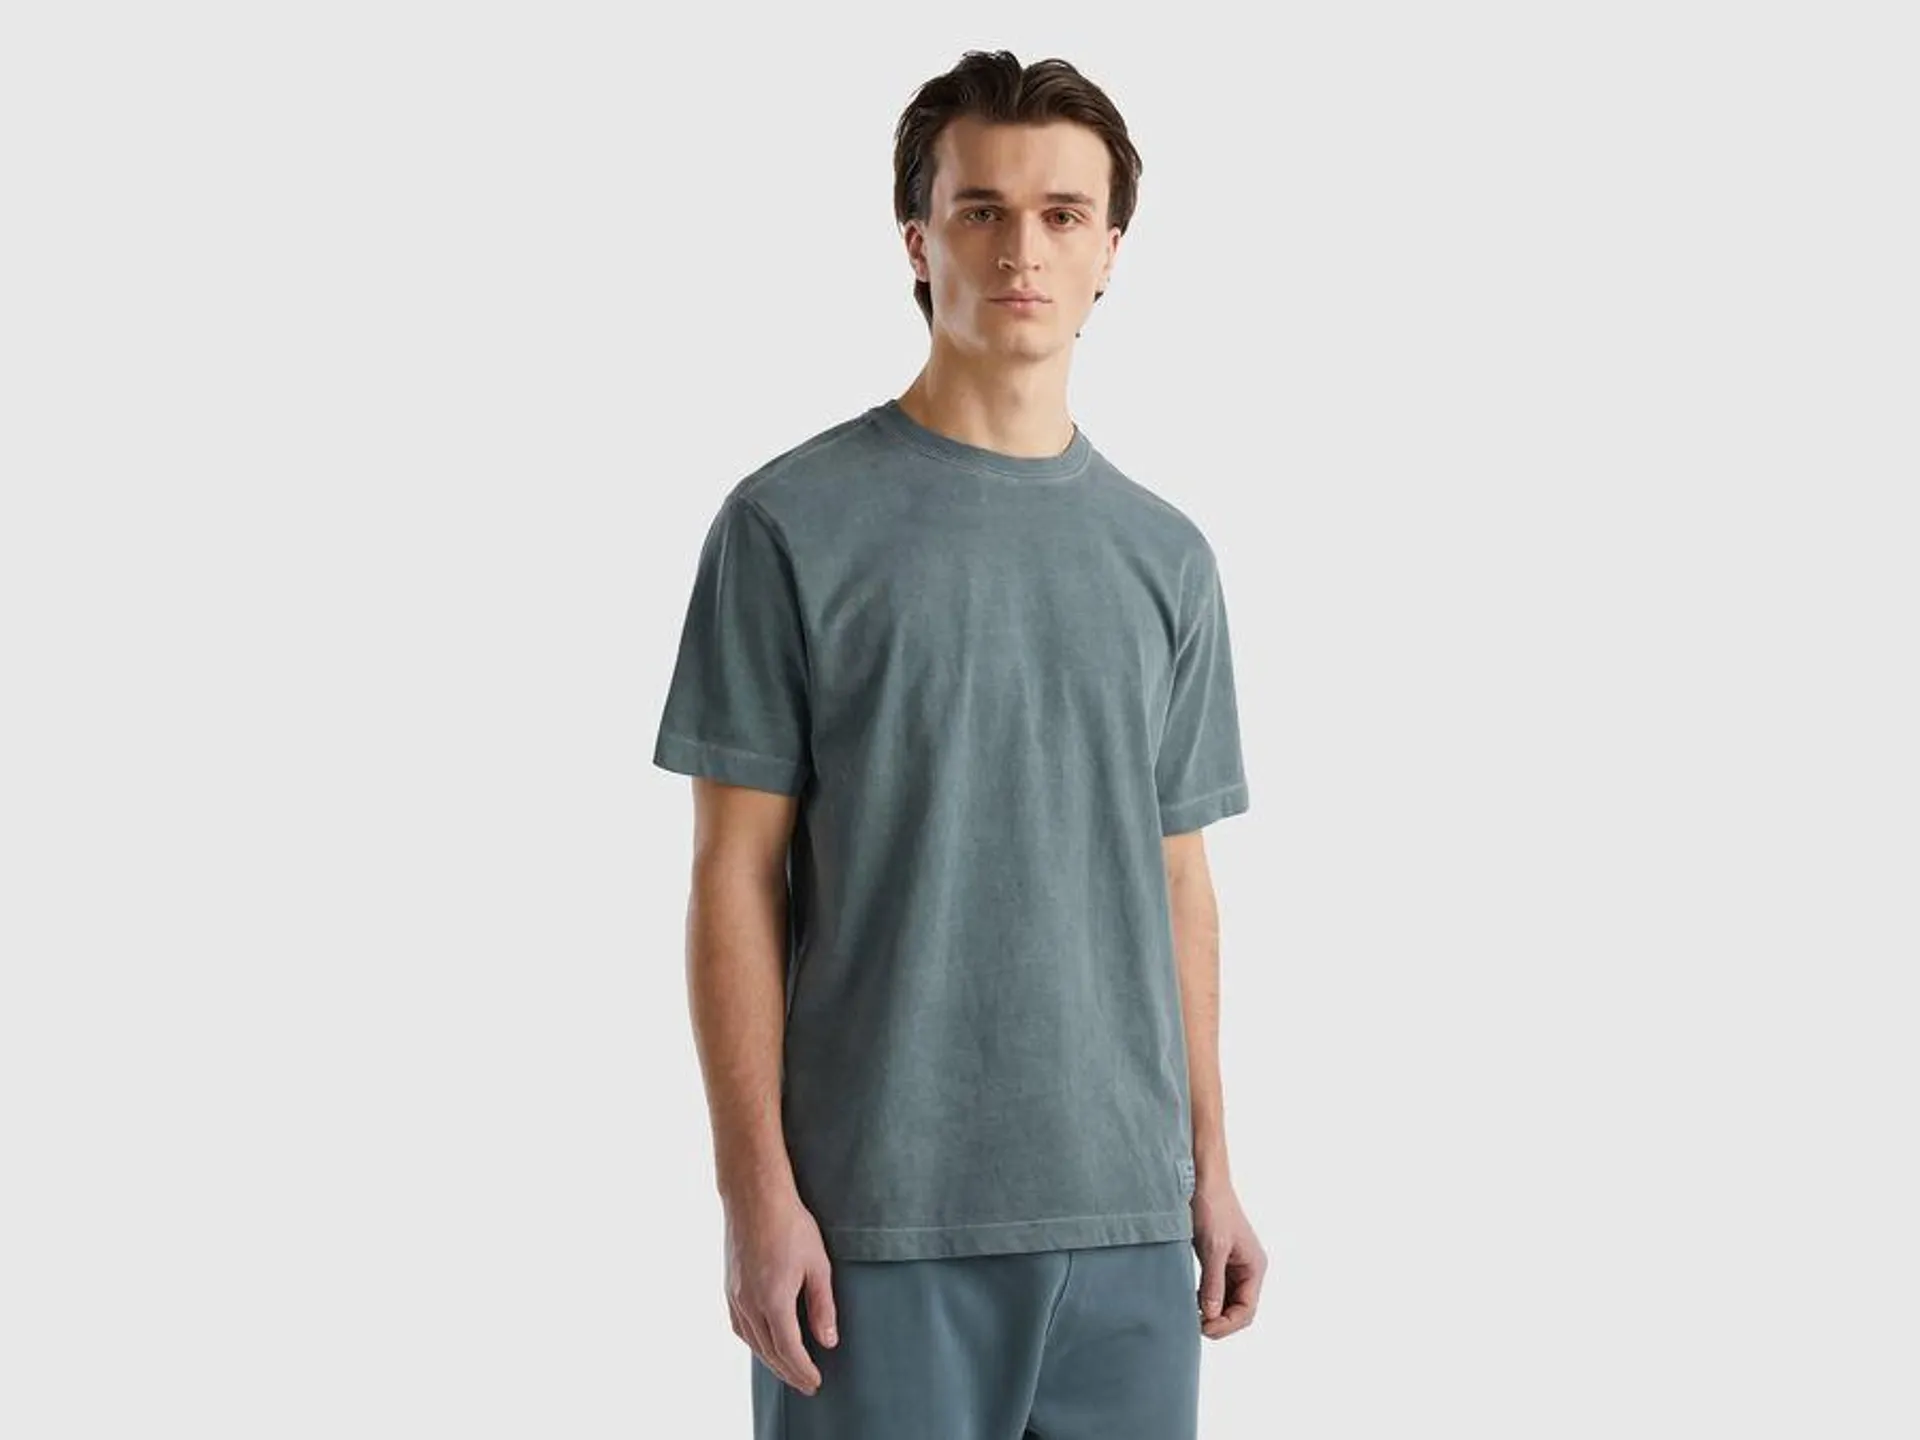 Rundhals-T-Shirt 100% Bio-Baumwolle